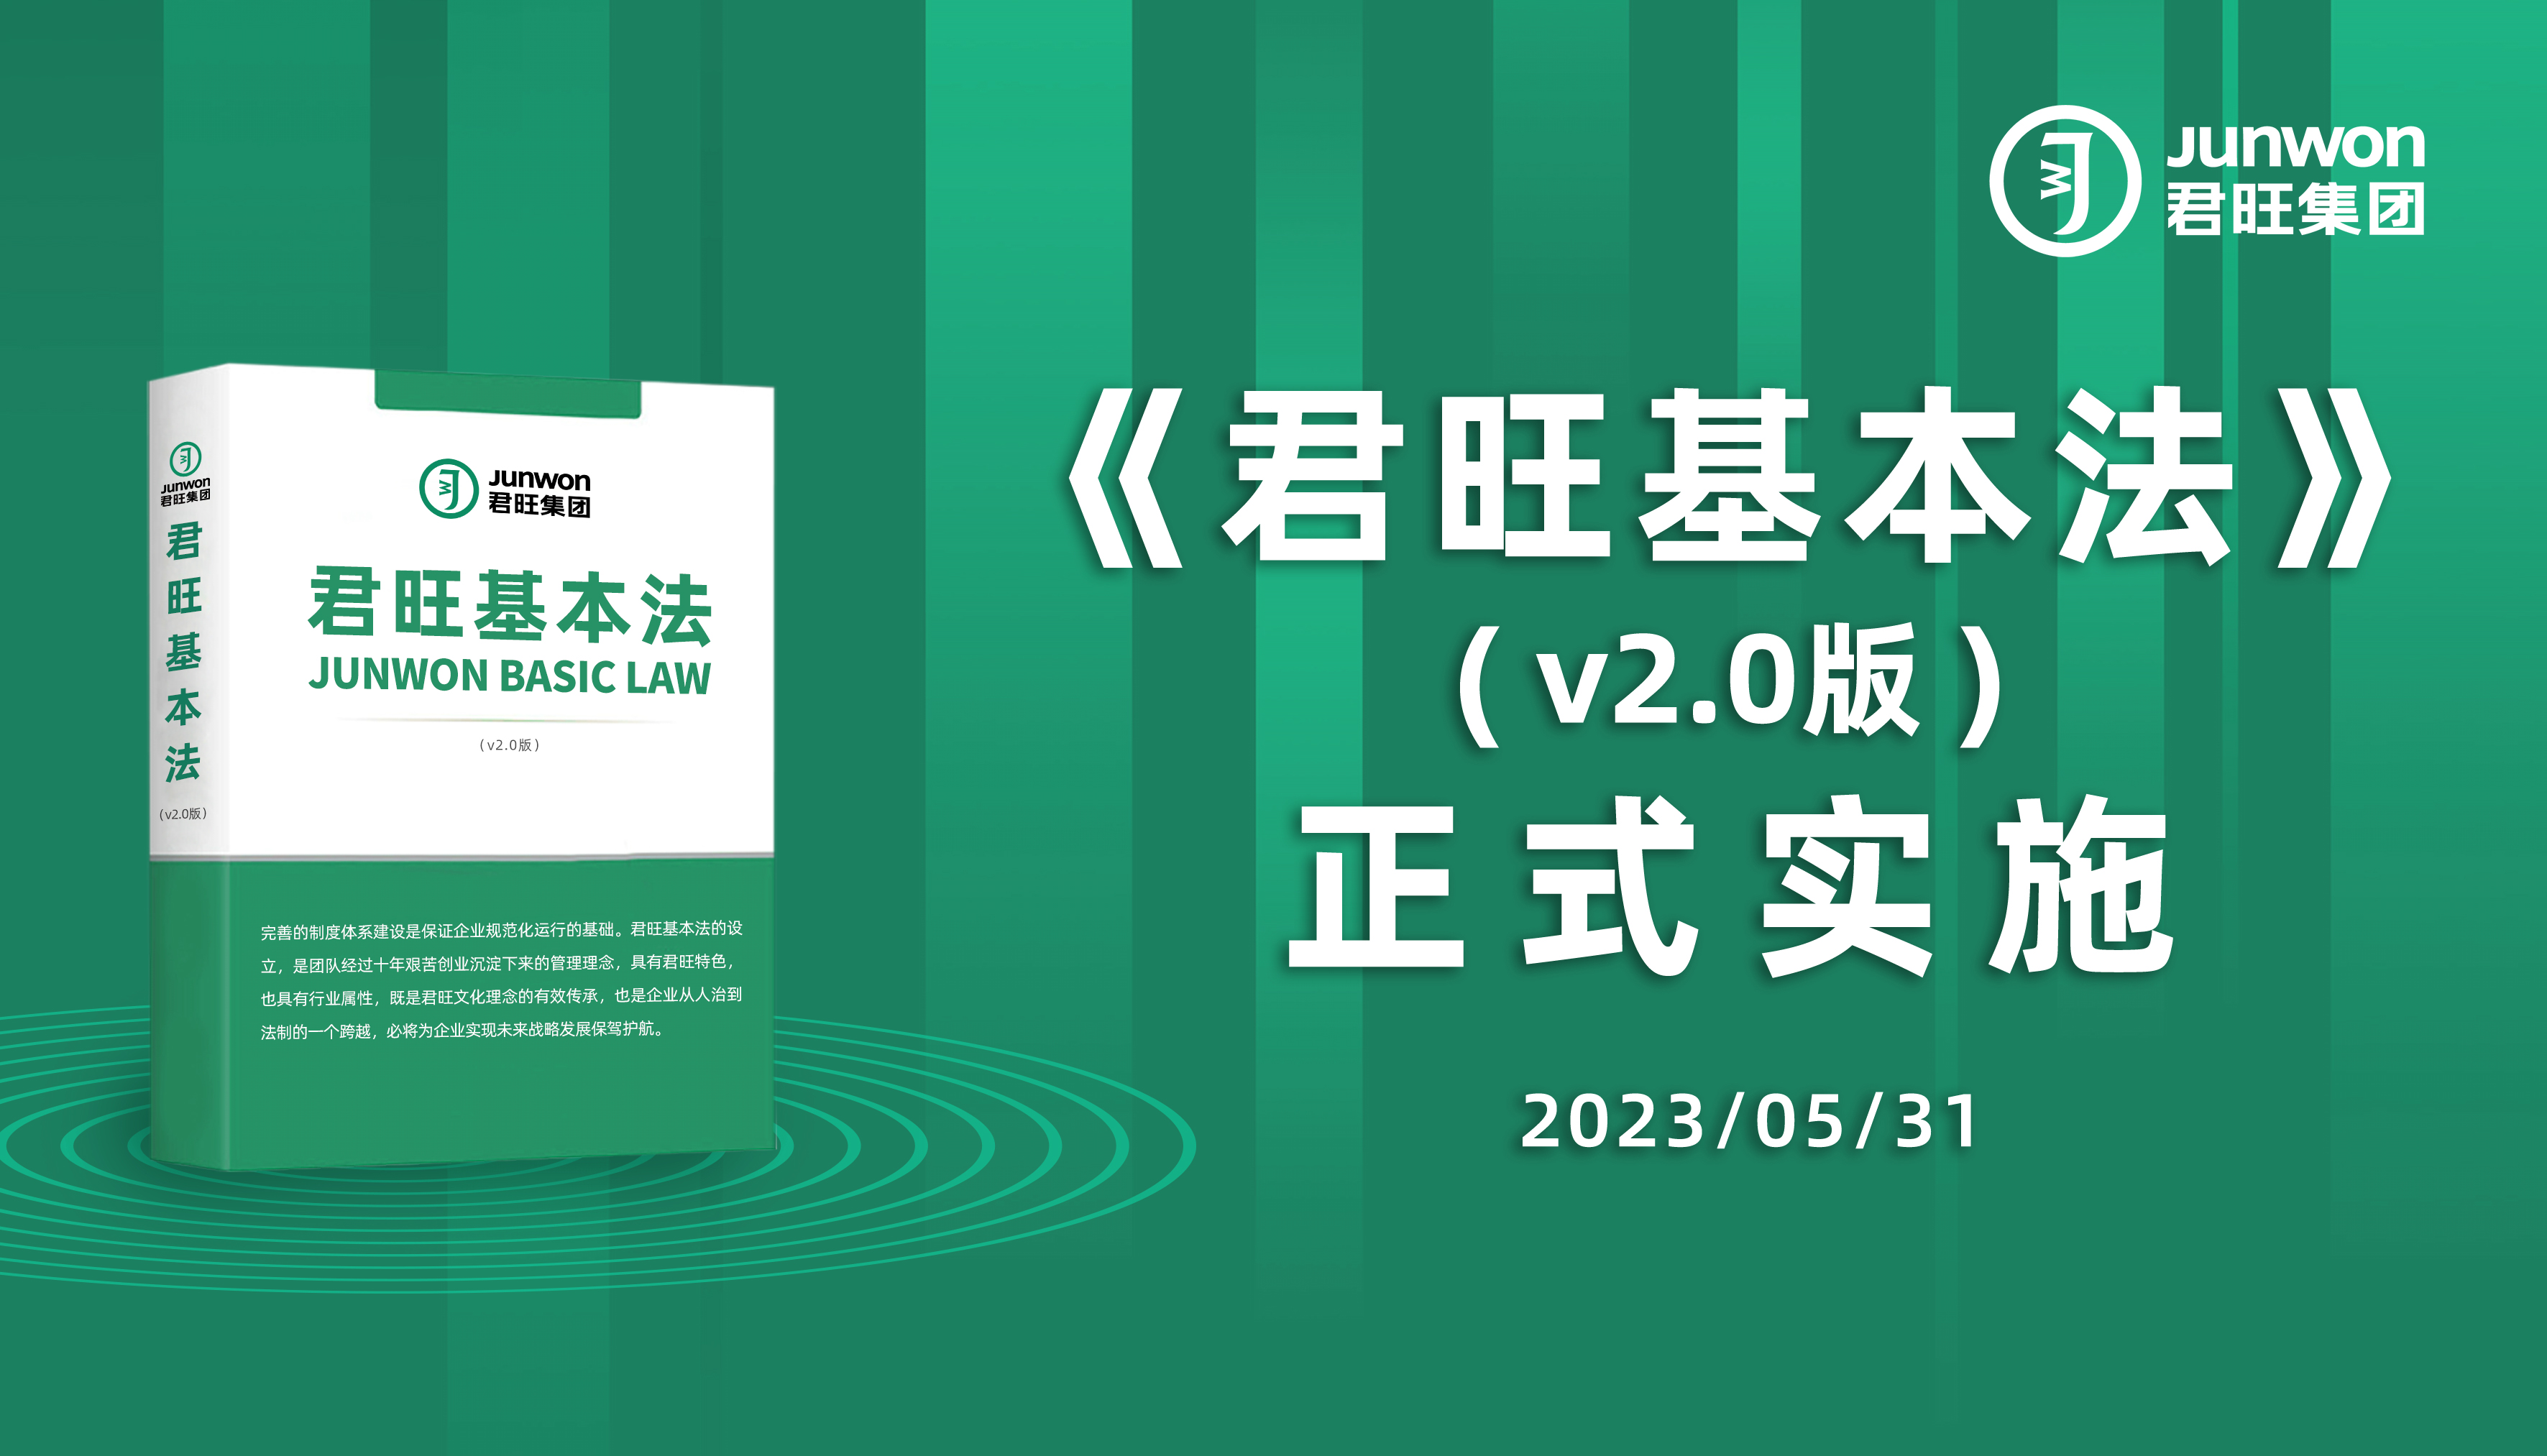 热烈祝贺《君旺基本法（v2.0）》正式颁布并实施